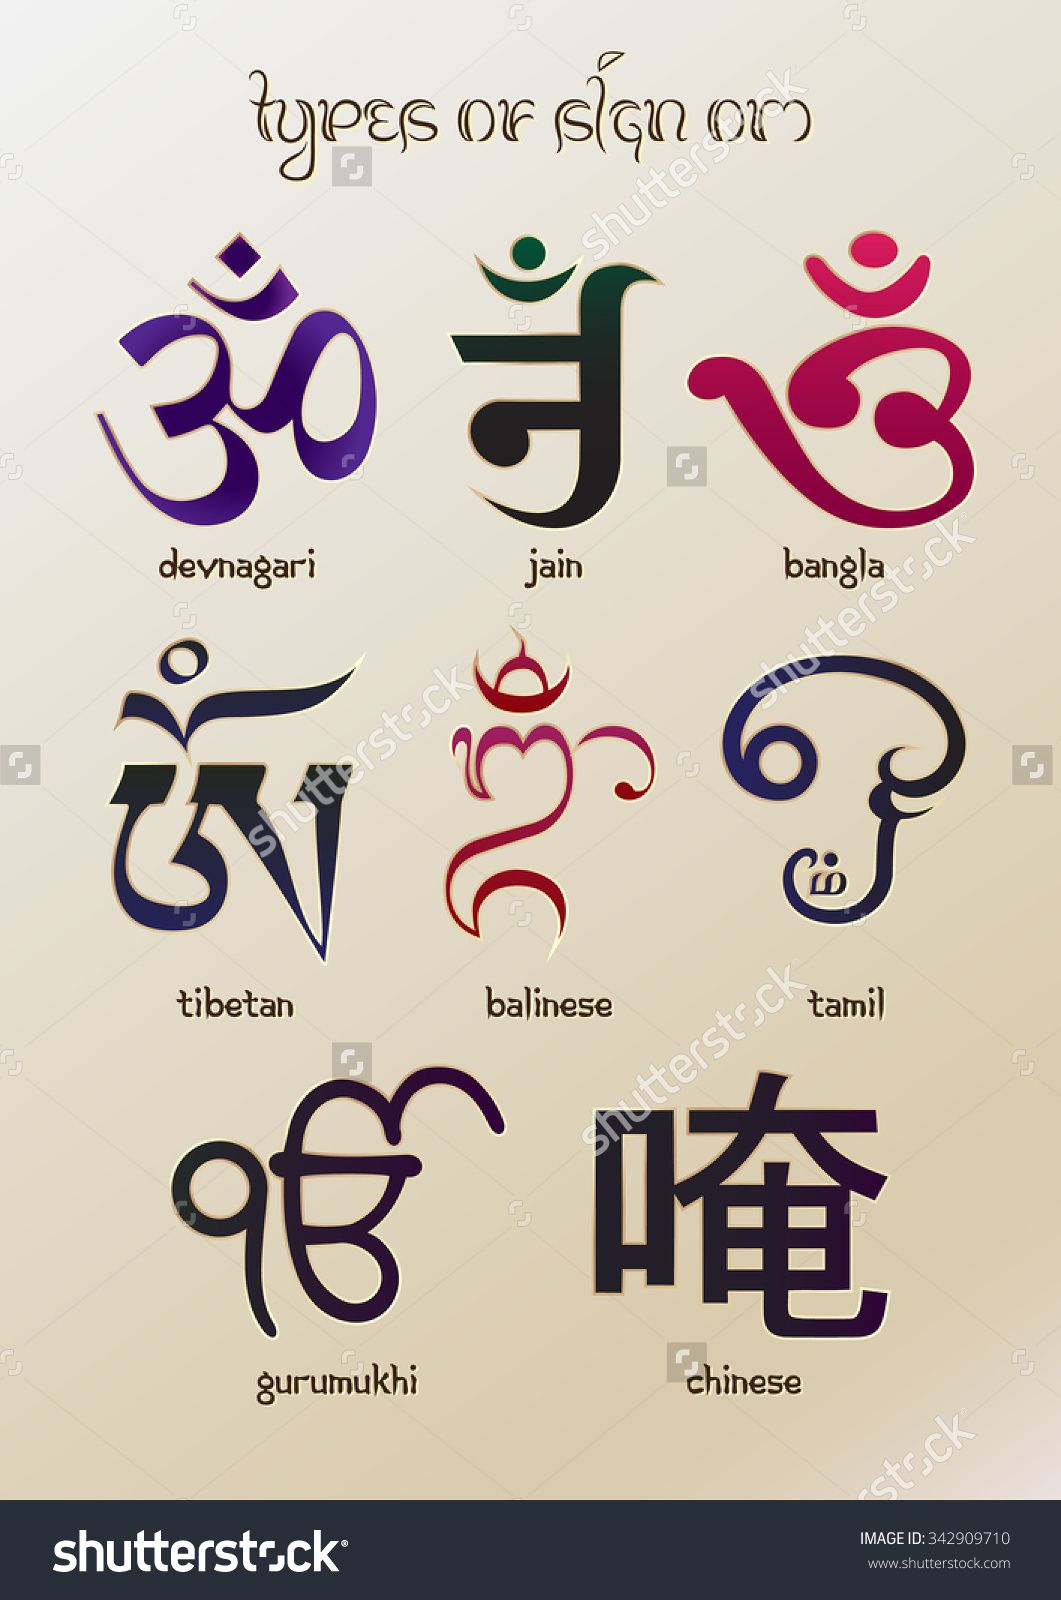 Colorful, Detailed Illustration Types Of Vedic Om Symbol bestimmt für Indische Zeichen Und Ihre Bedeutung